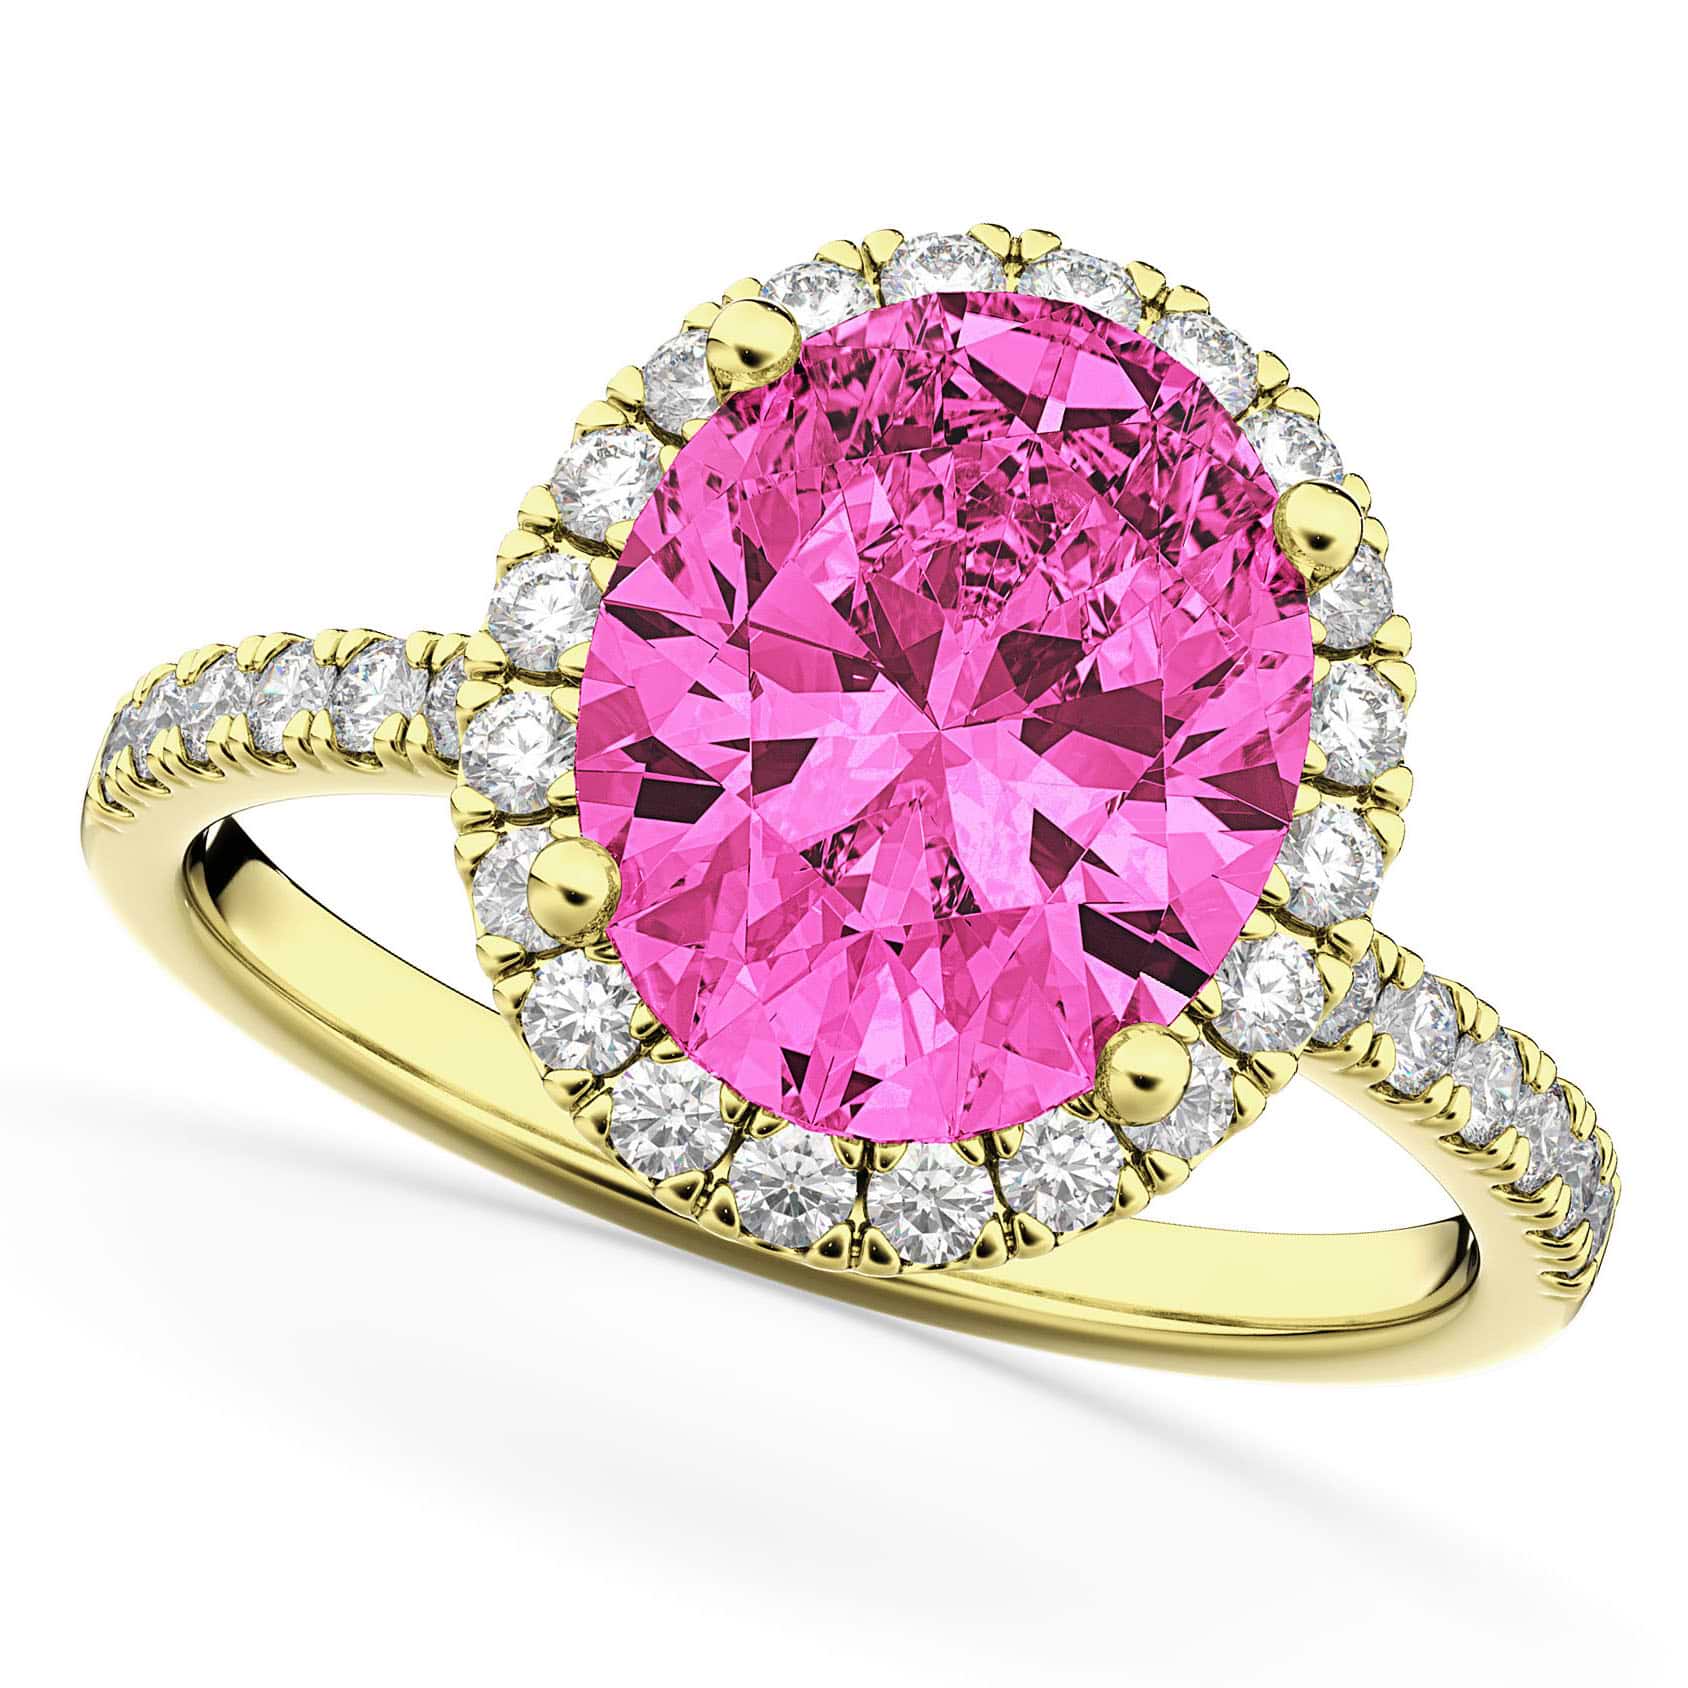 Oval Cut Halo Pink Tourmaline & Diamond Engagement Ring 14K Yellow Gold 3.41ct